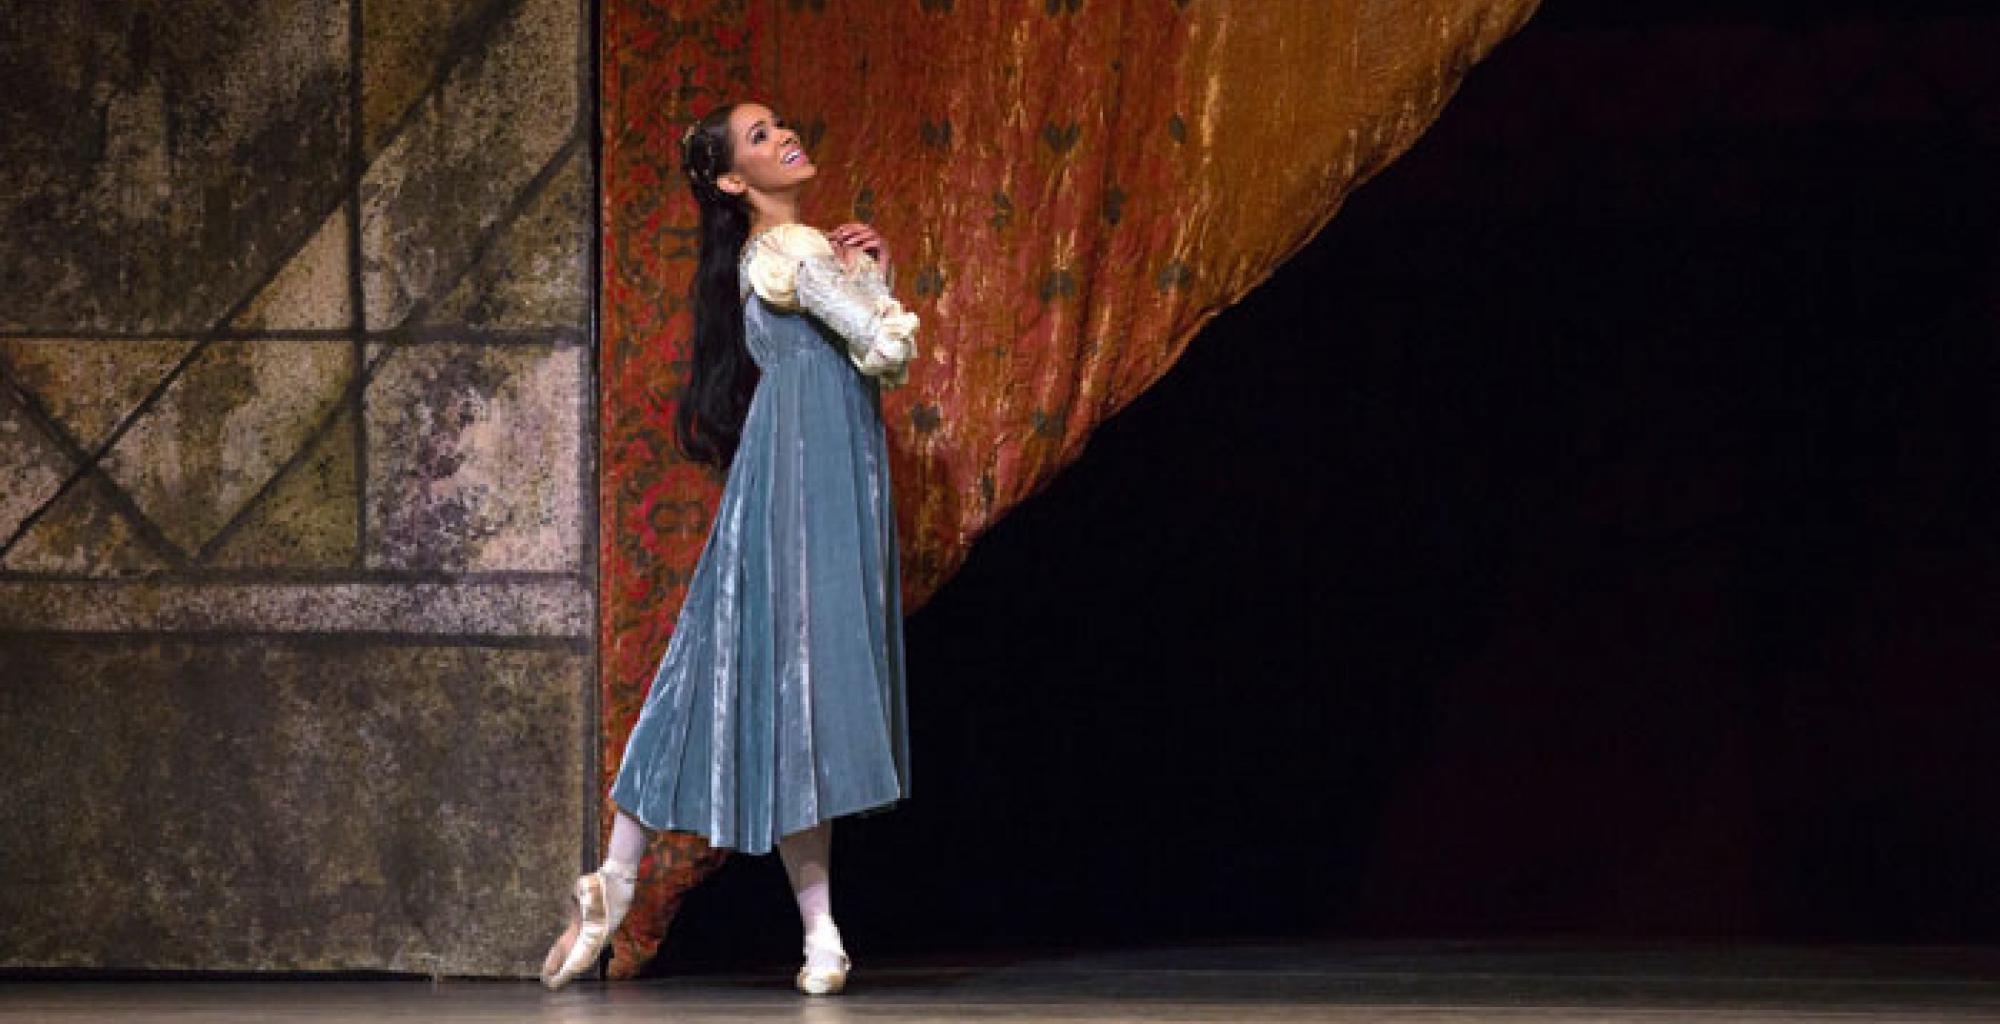 Romeo and Juliet | Palace Opera u0026 Ballet - Cinema Programme